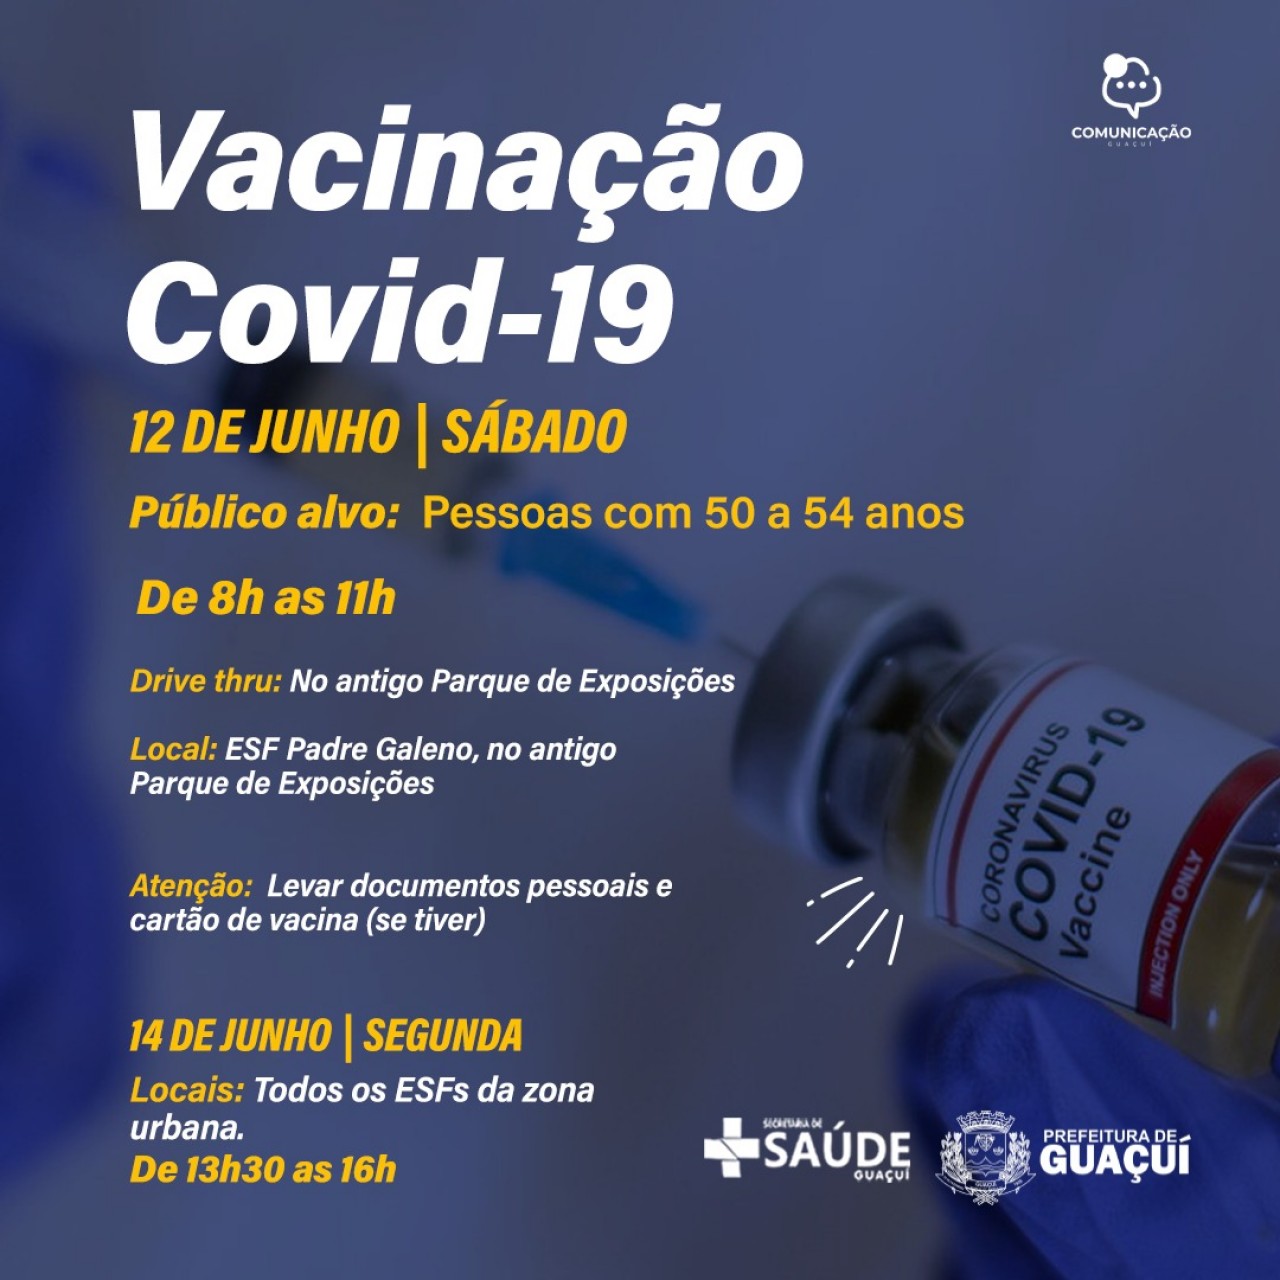 Vacinação Covid-19 para pessoas de 50 a 54 anos inicia neste sábado (12)